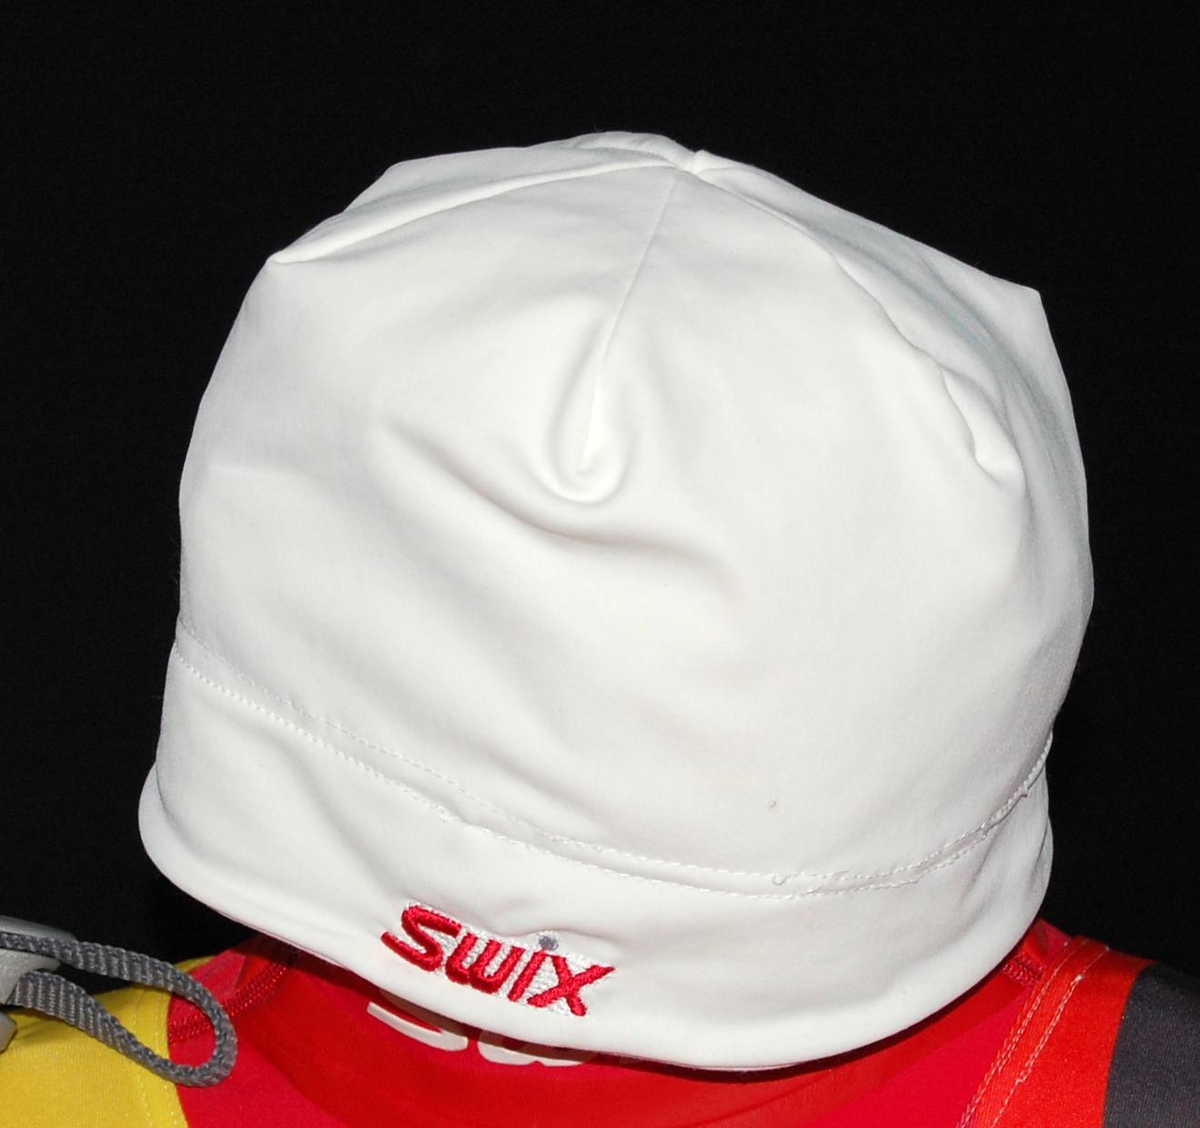 Hvit lue med rød Swix-logo.